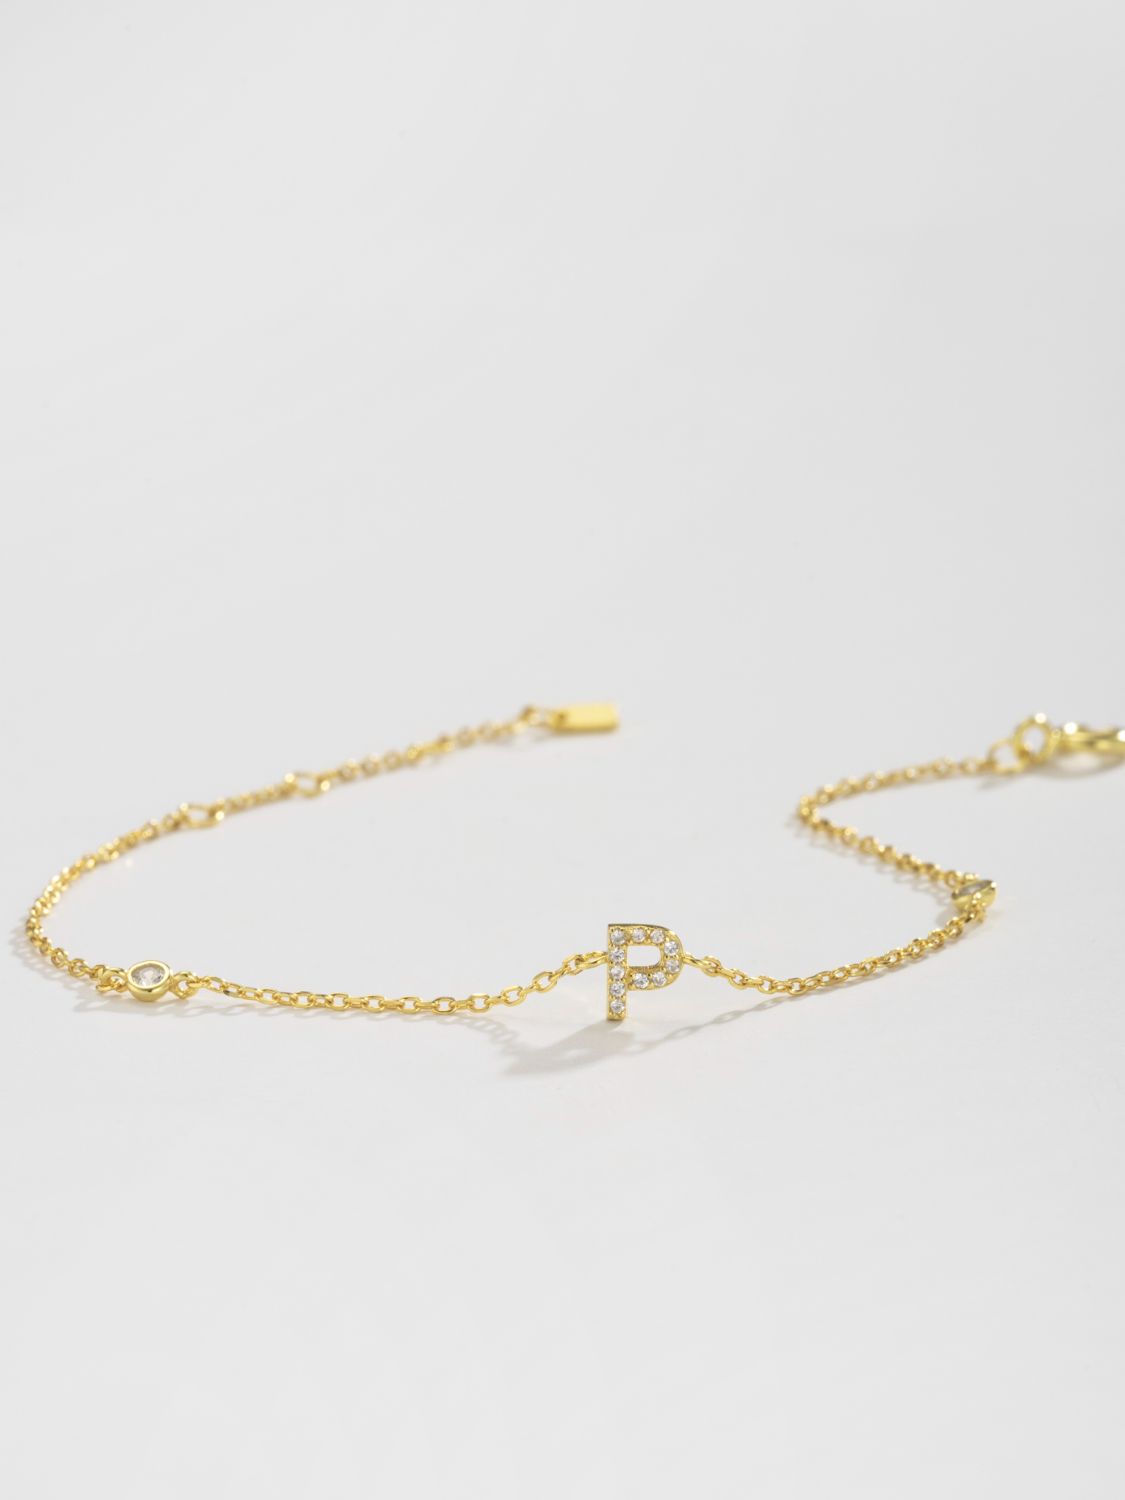 L To P Zircon 925 Sterling Silver Bracelet - Women’s Jewelry - Bracelets - 26 - 2024